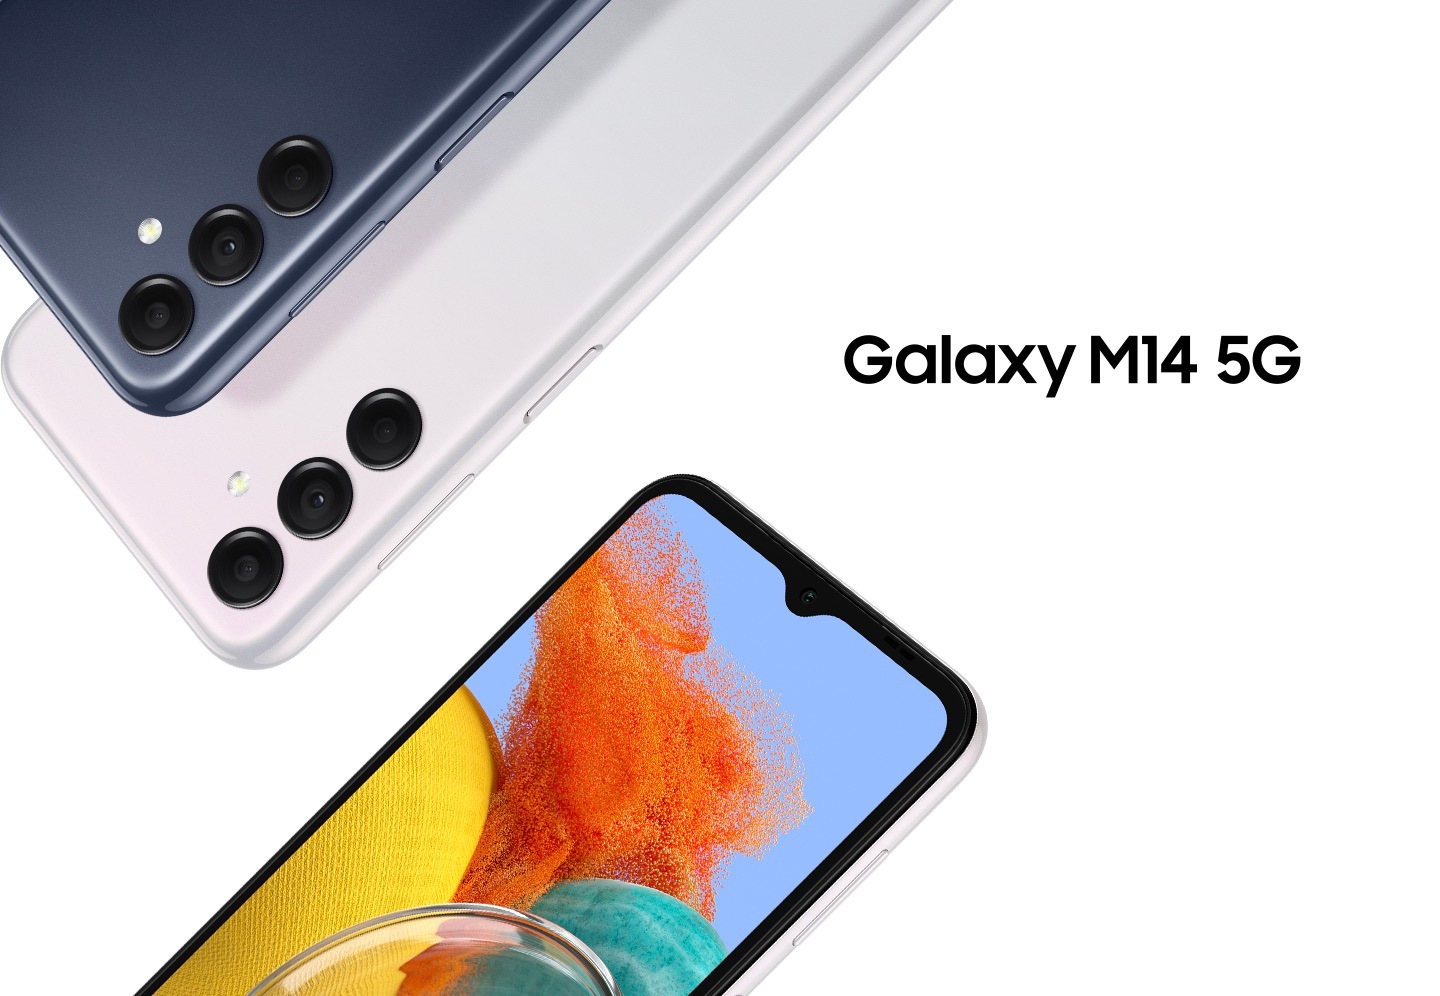 Trois appareils Galaxy M14 5G montrent l'arrière des appareils bleu foncé et argent ainsi que l'avant, montrant une photo colorée à l'écran.